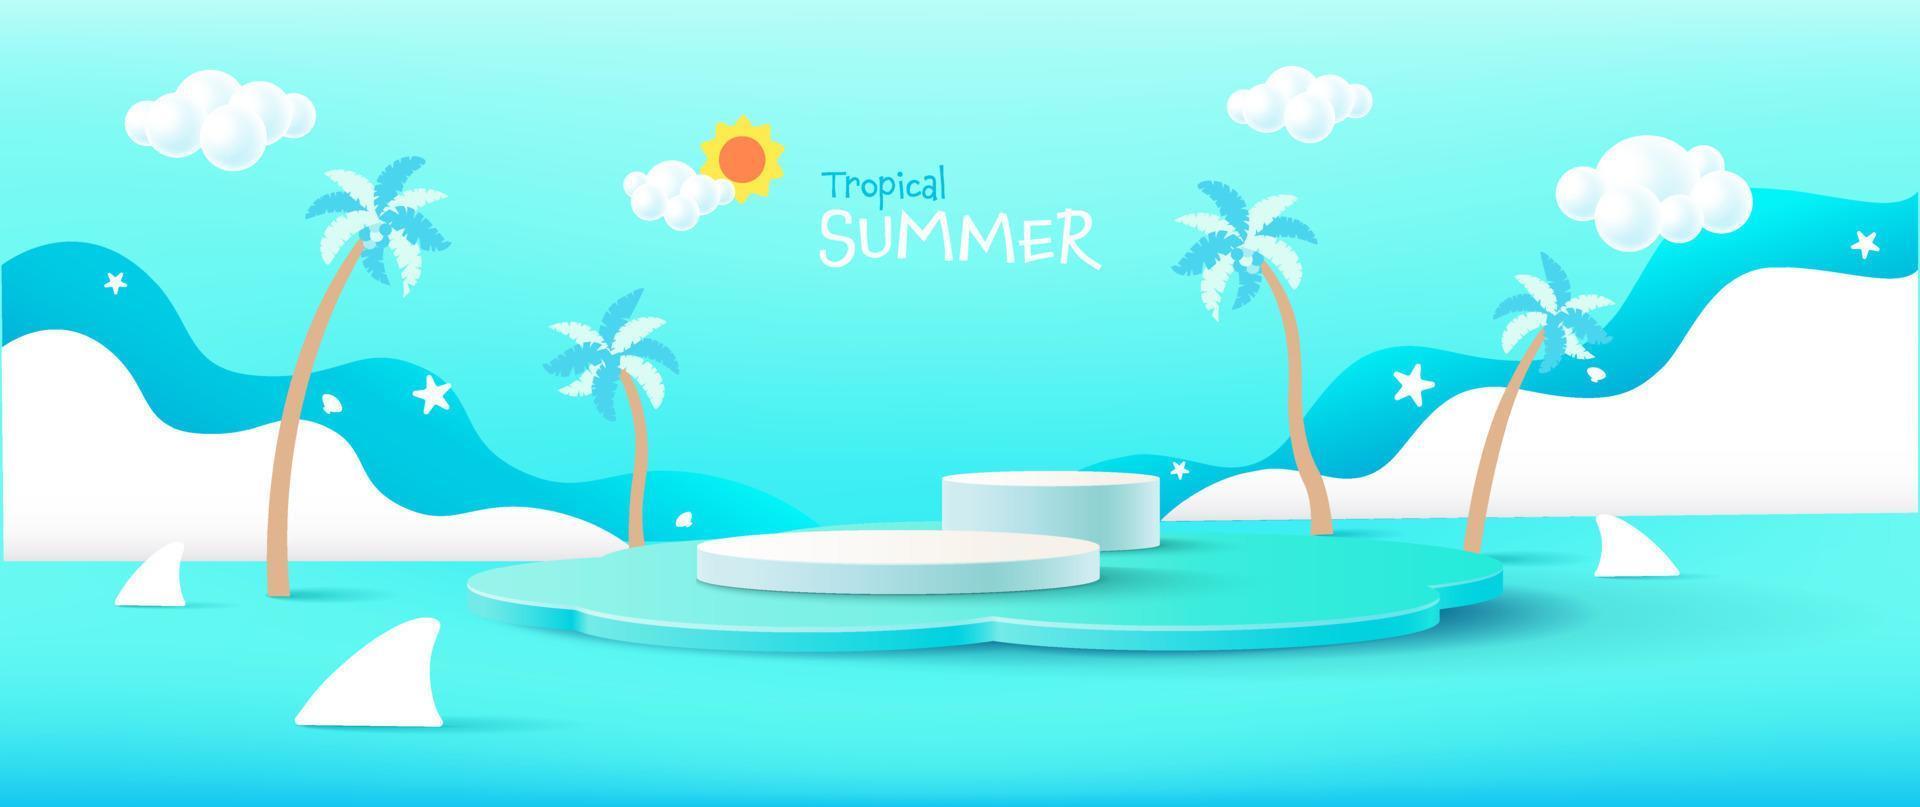 Vektor Sommer Urlaub Hintergrund. moderner minimalistischer hintergrund, designvorlage für produktpräsentation